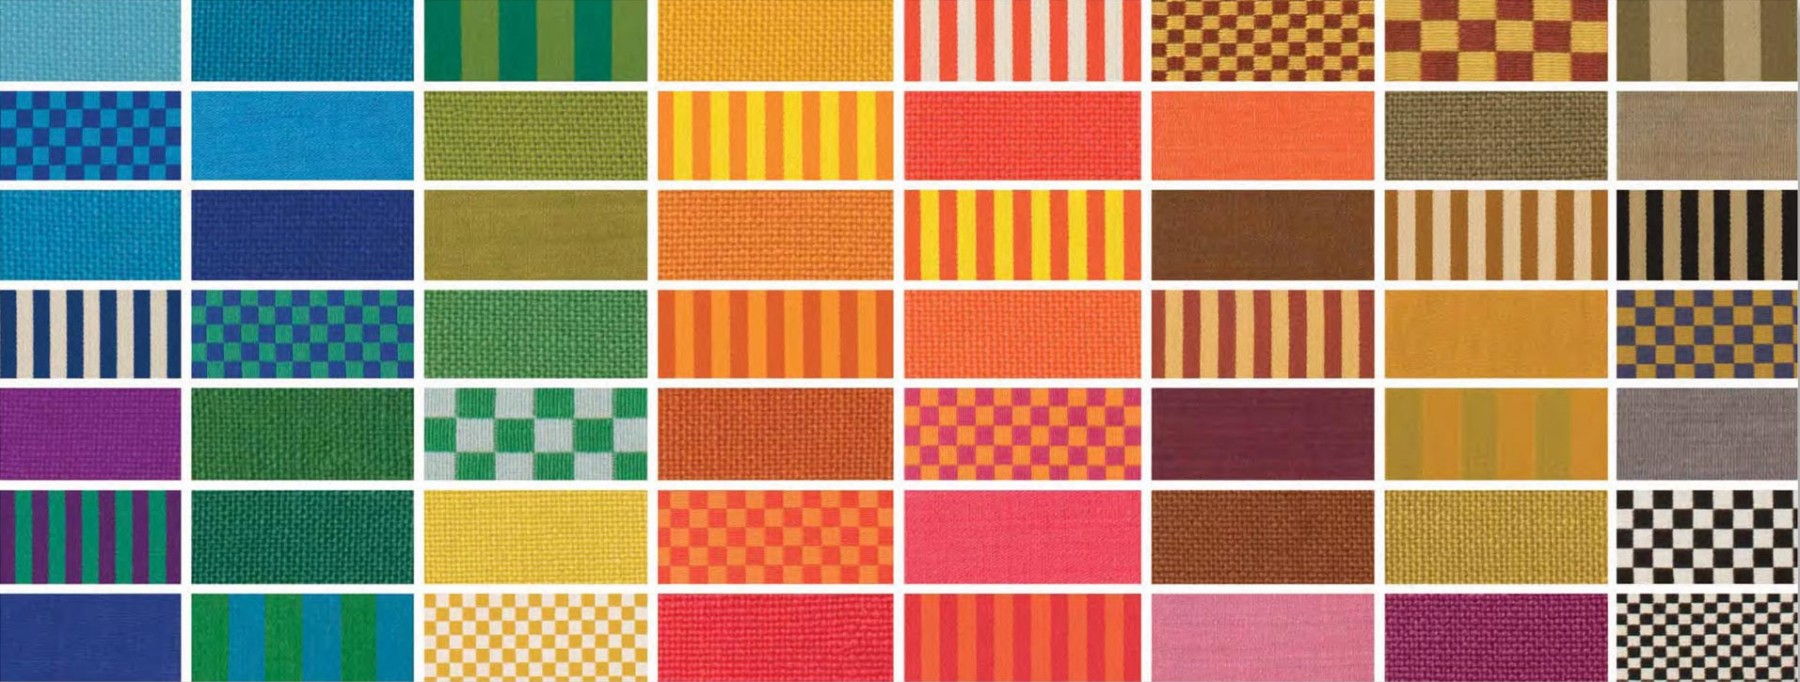 alexandergirard_textil-patterns